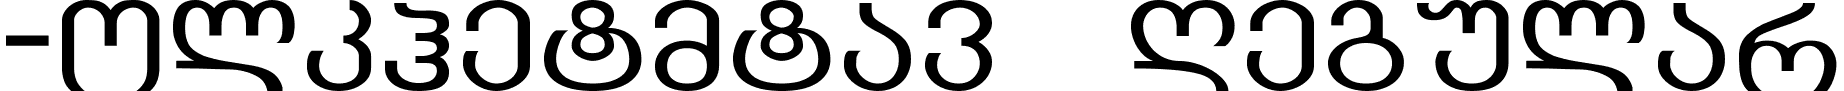 GEO-Kolkhetmtav Regular font - KOLK___.TTF